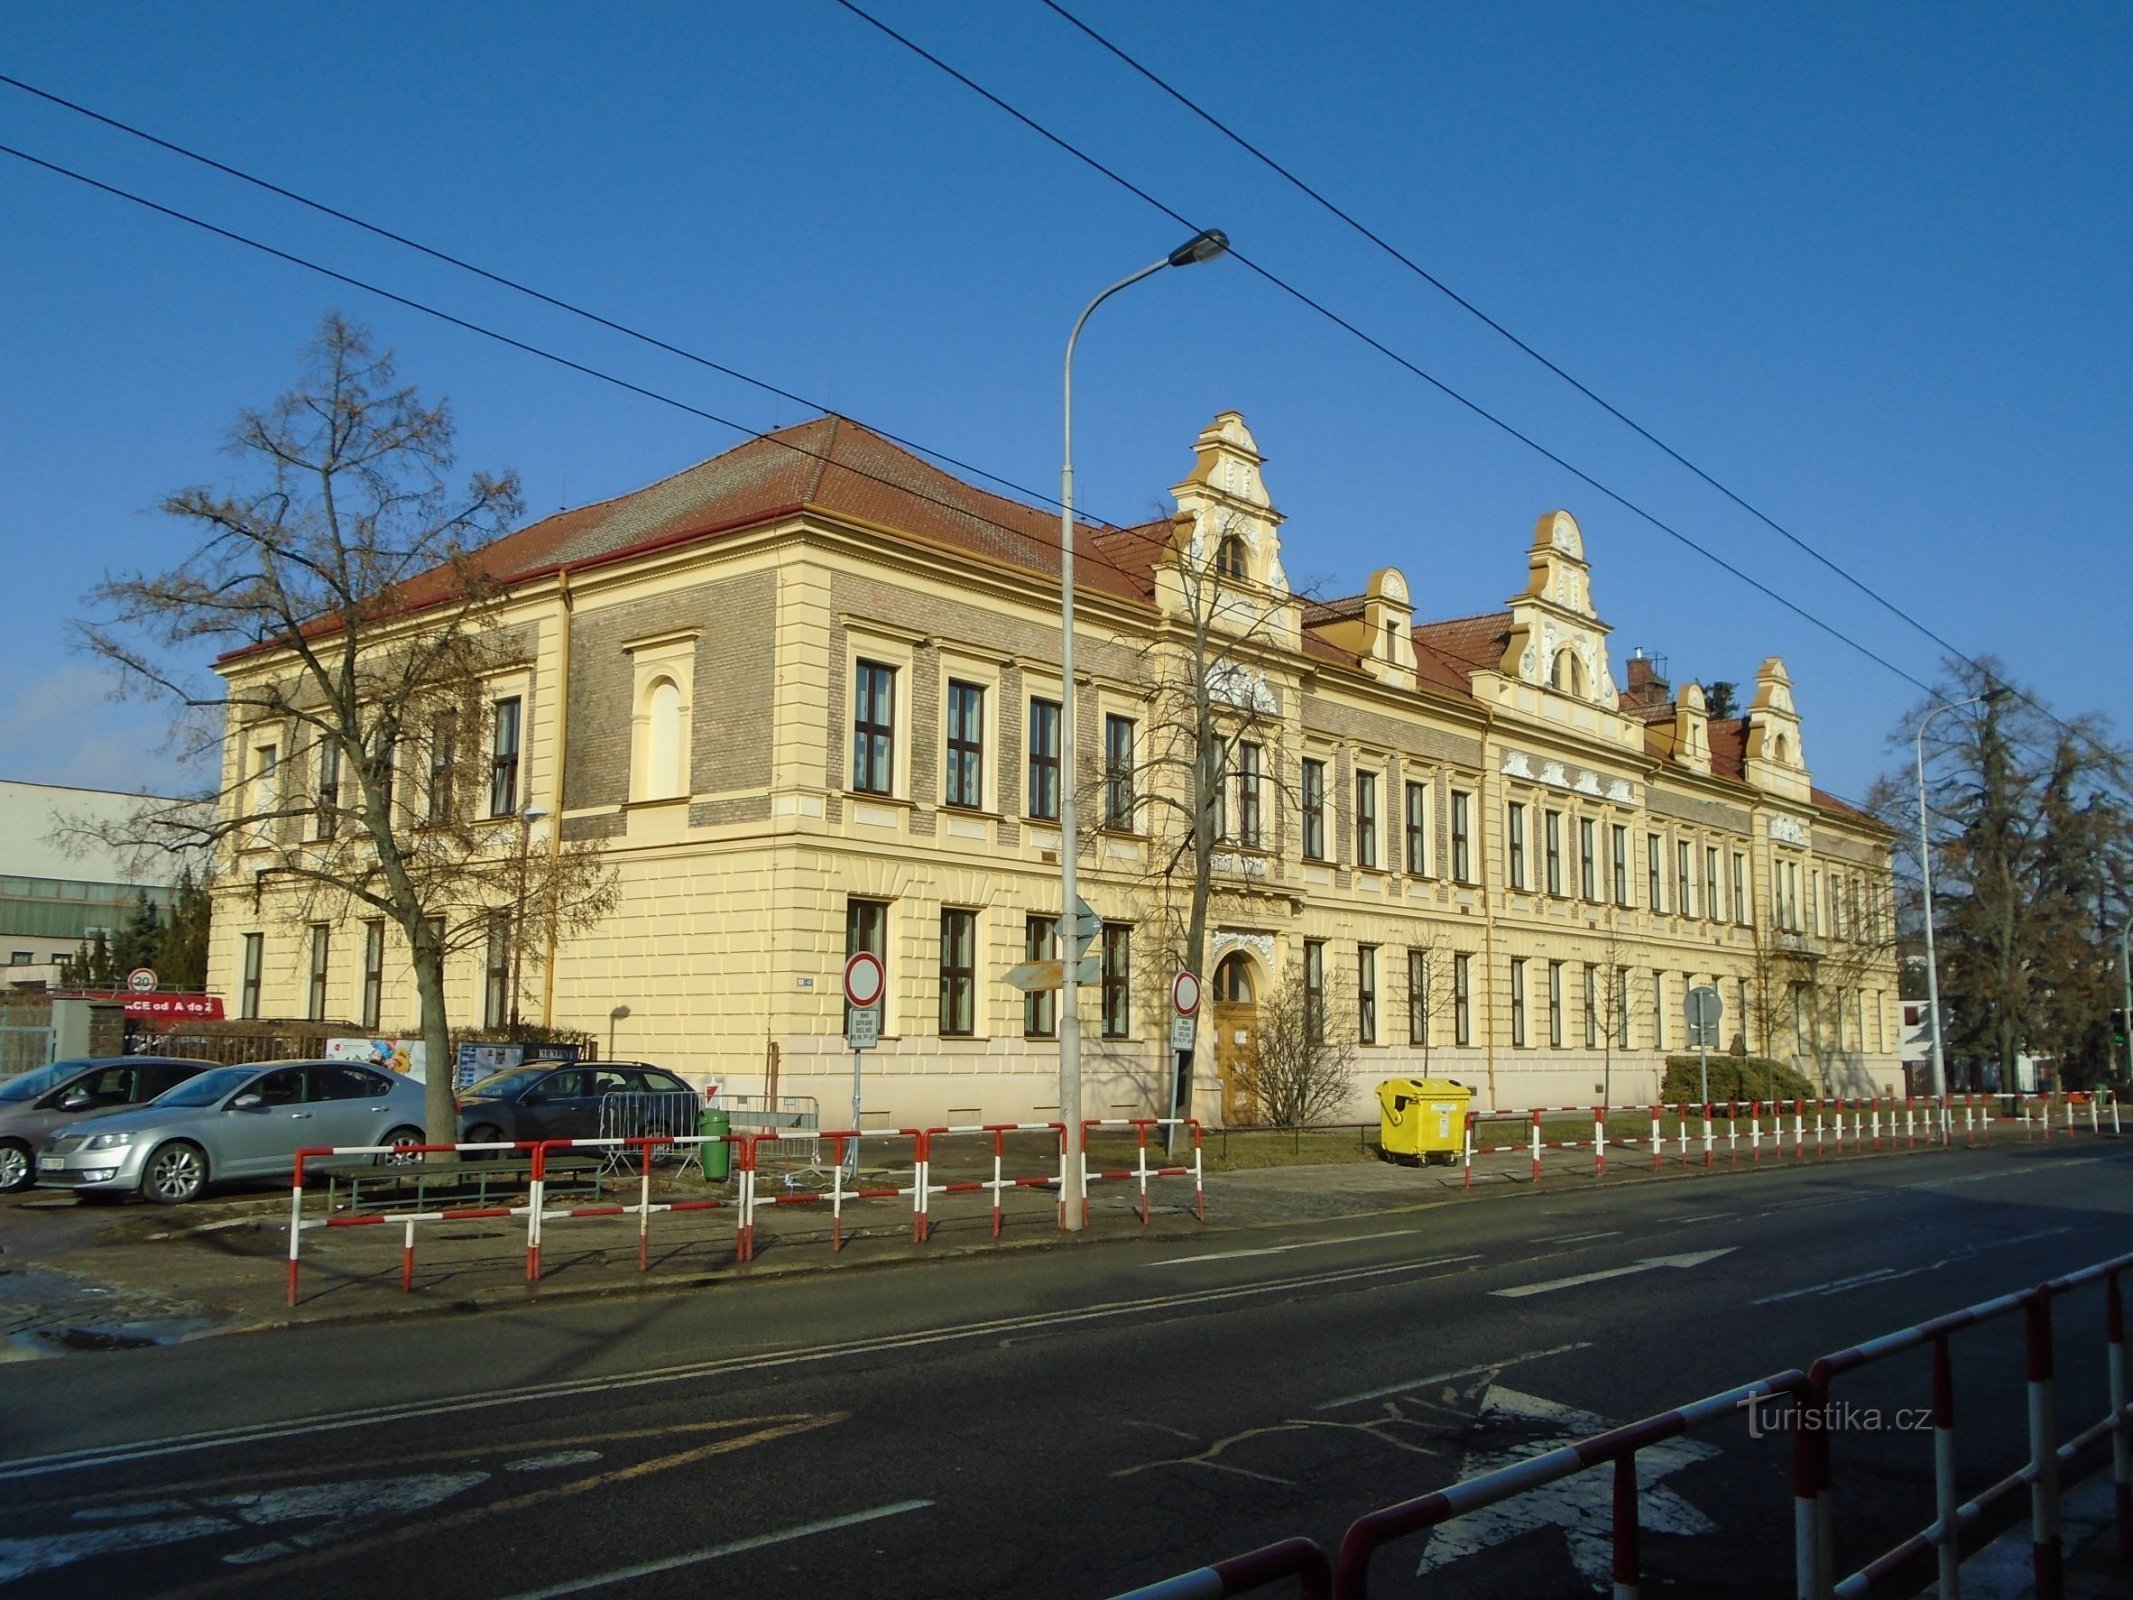 Sadašnji izgled opće škole u Kuklenyu (Hradec Králové, 8.2.2019. veljače XNUMX.)